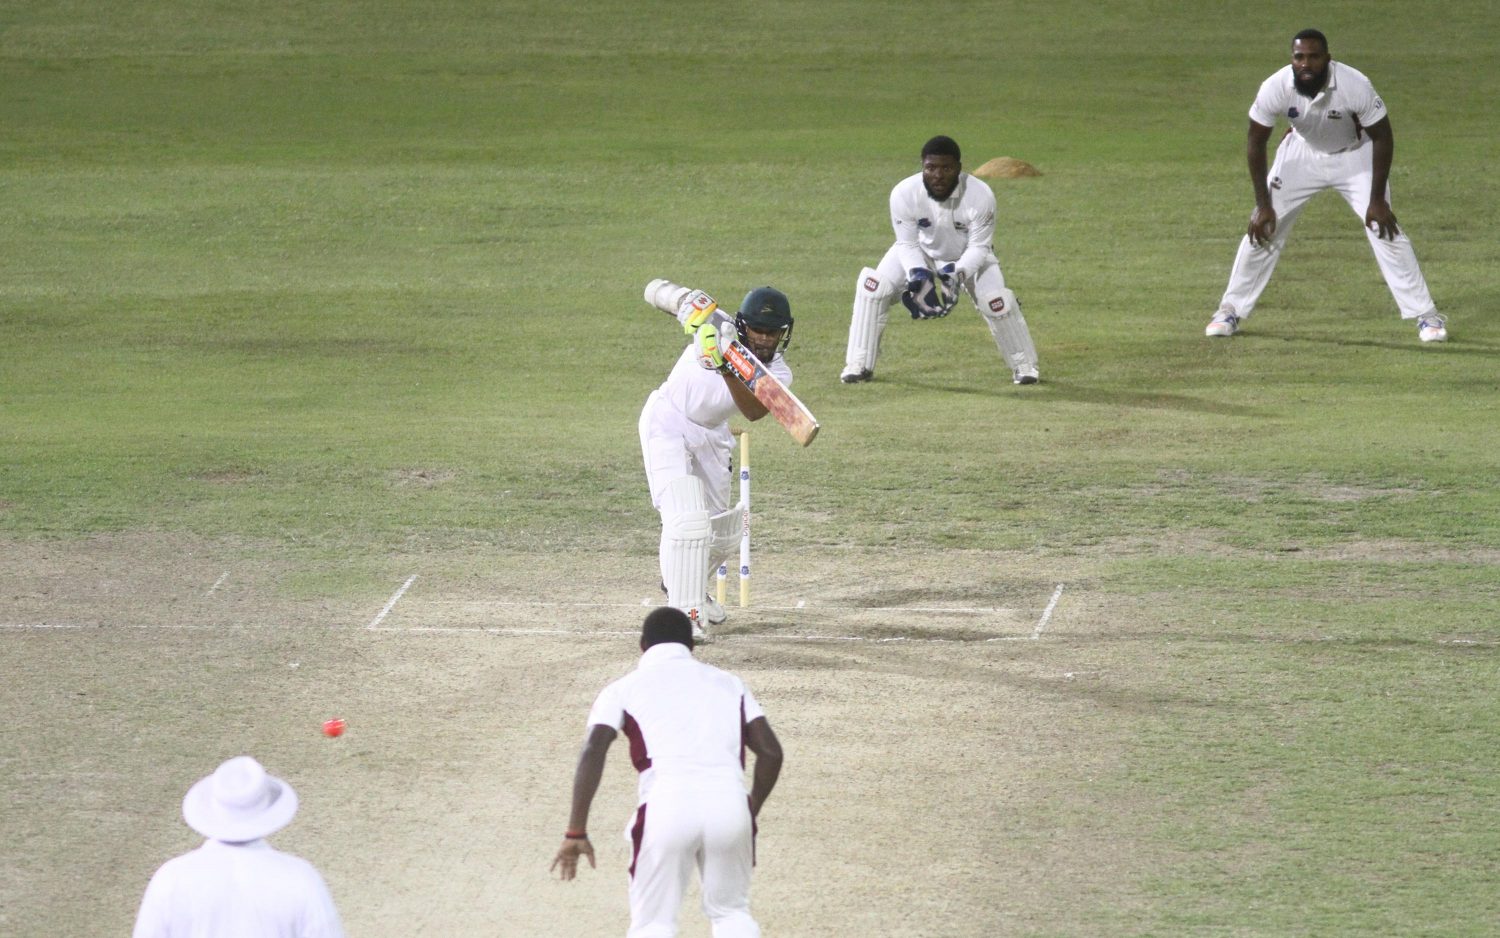 Winning run: Tagenarine Chanderpaul hits the winning runs as Guyana win by 10 wickets (Orlando Charles photo)